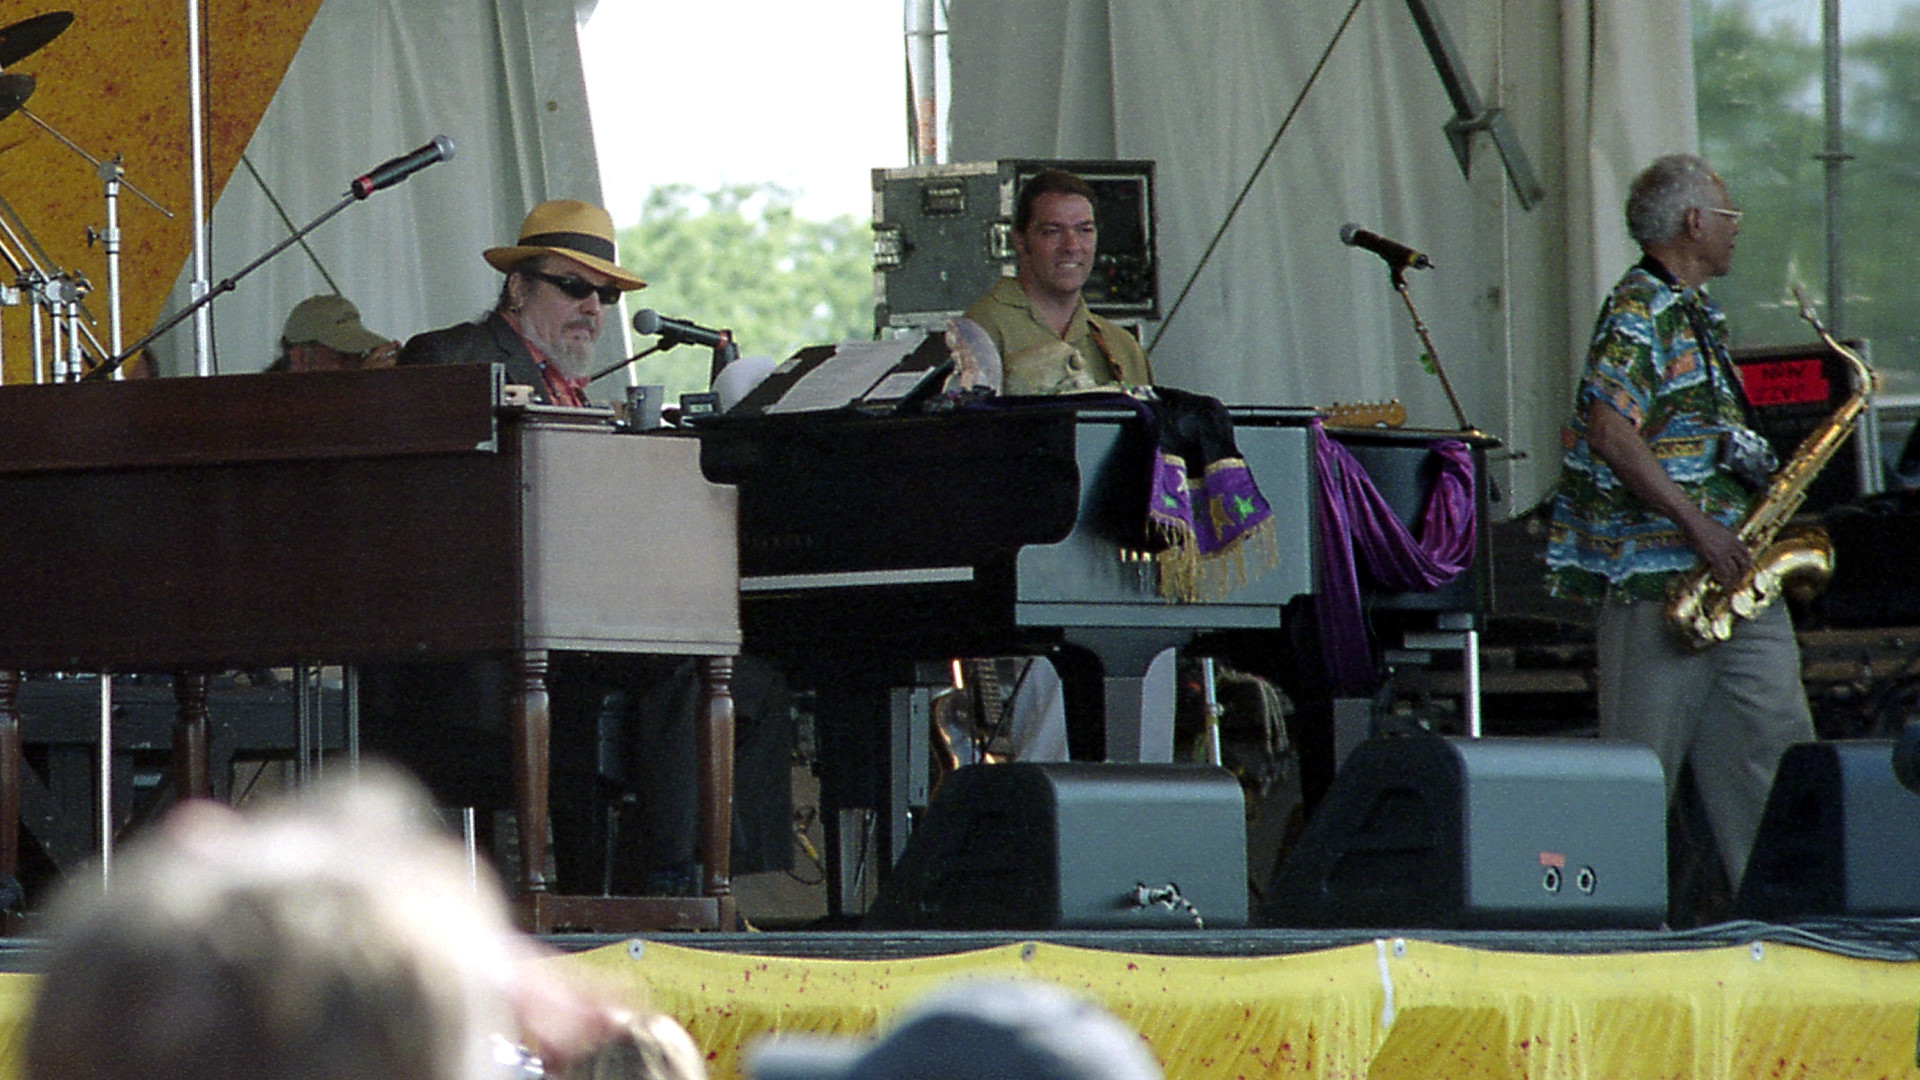 Dr. John at Jazz Fest 2003